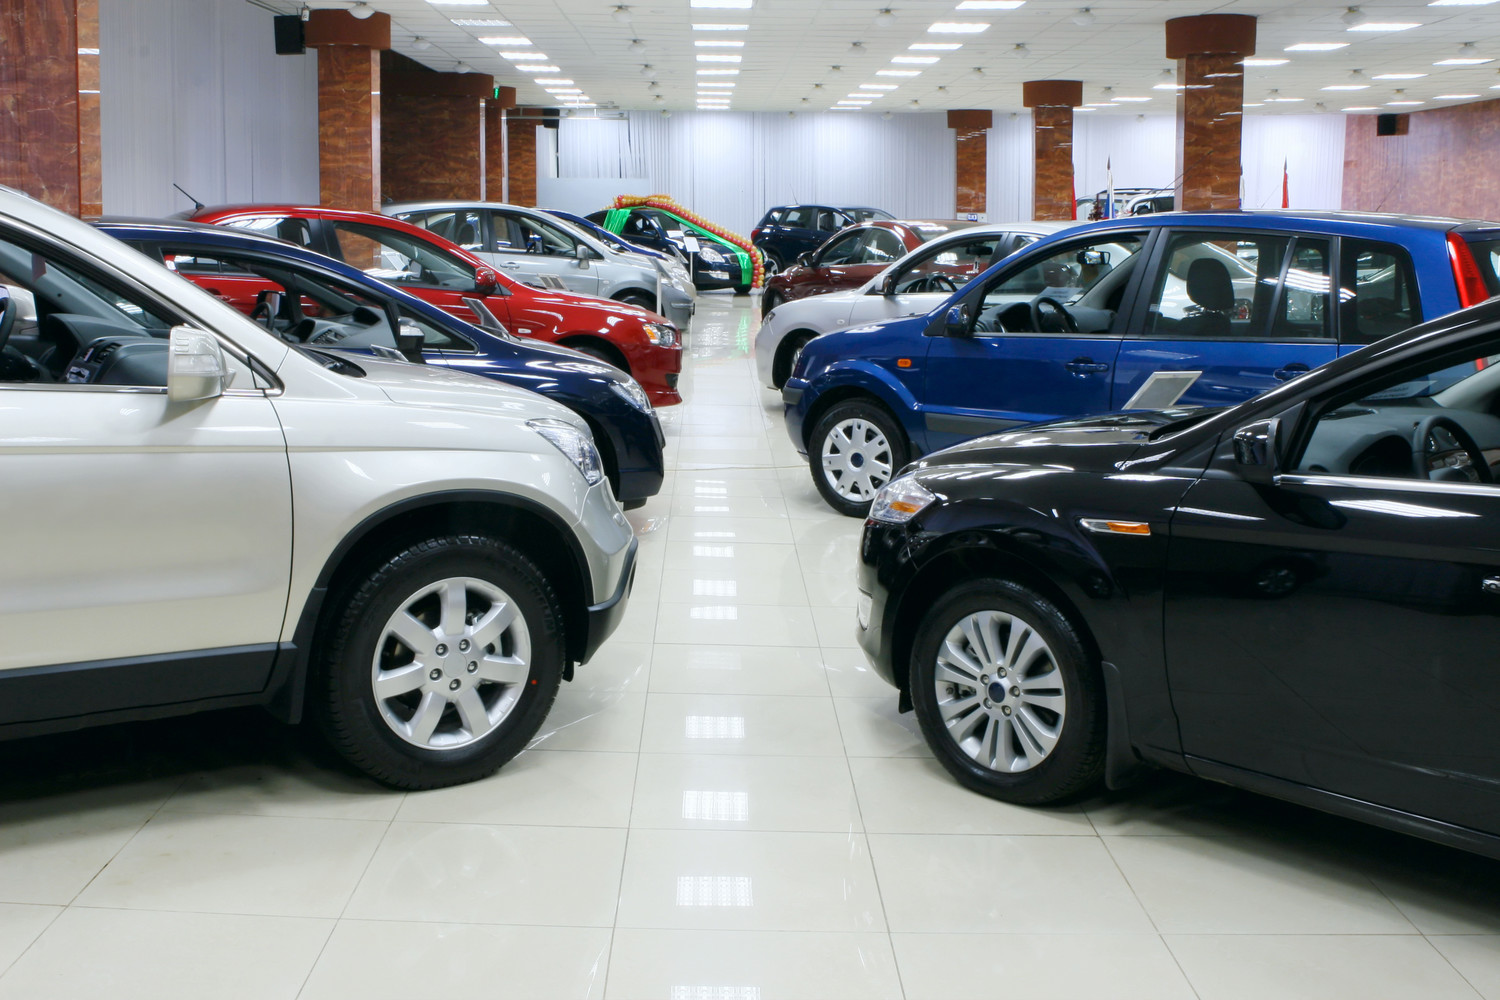 ВЦИОМ: 37% россиян недовольны качеством автомобилей из Китая